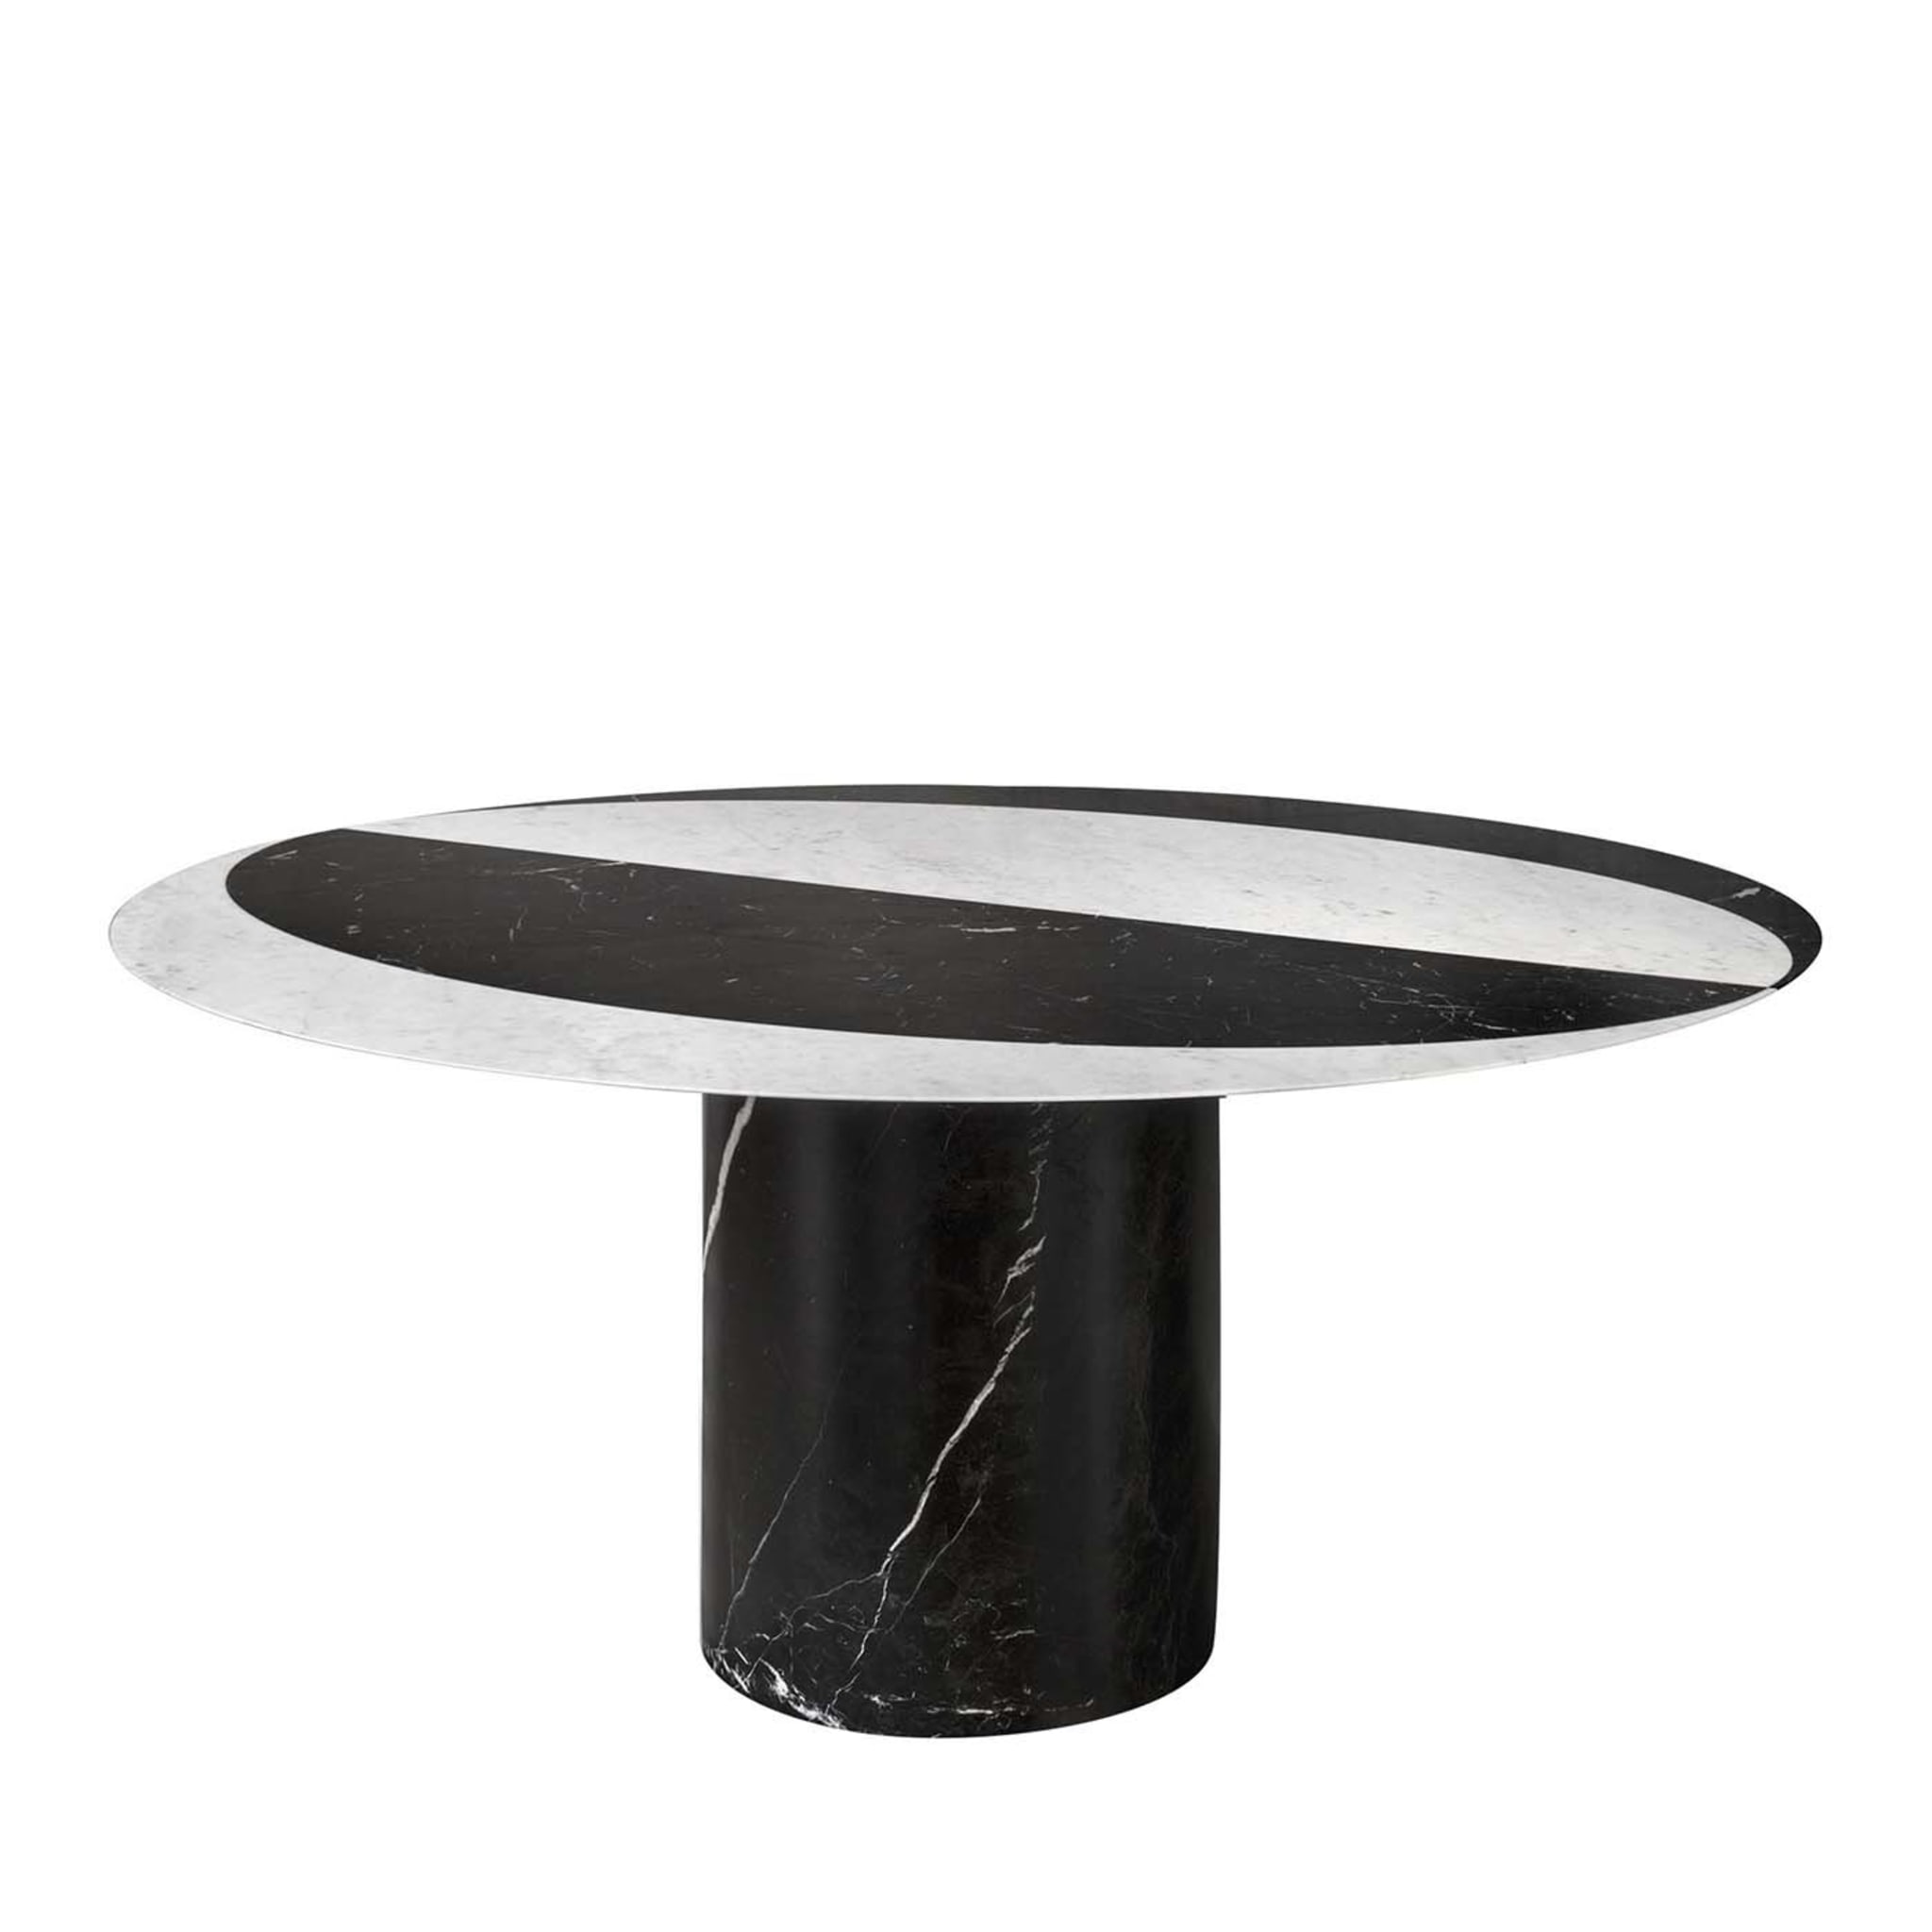 Tavolo da pranzo rotondo in marmo bianco e nero Proiezioni #2 di Elisa Ossino - Vista principale